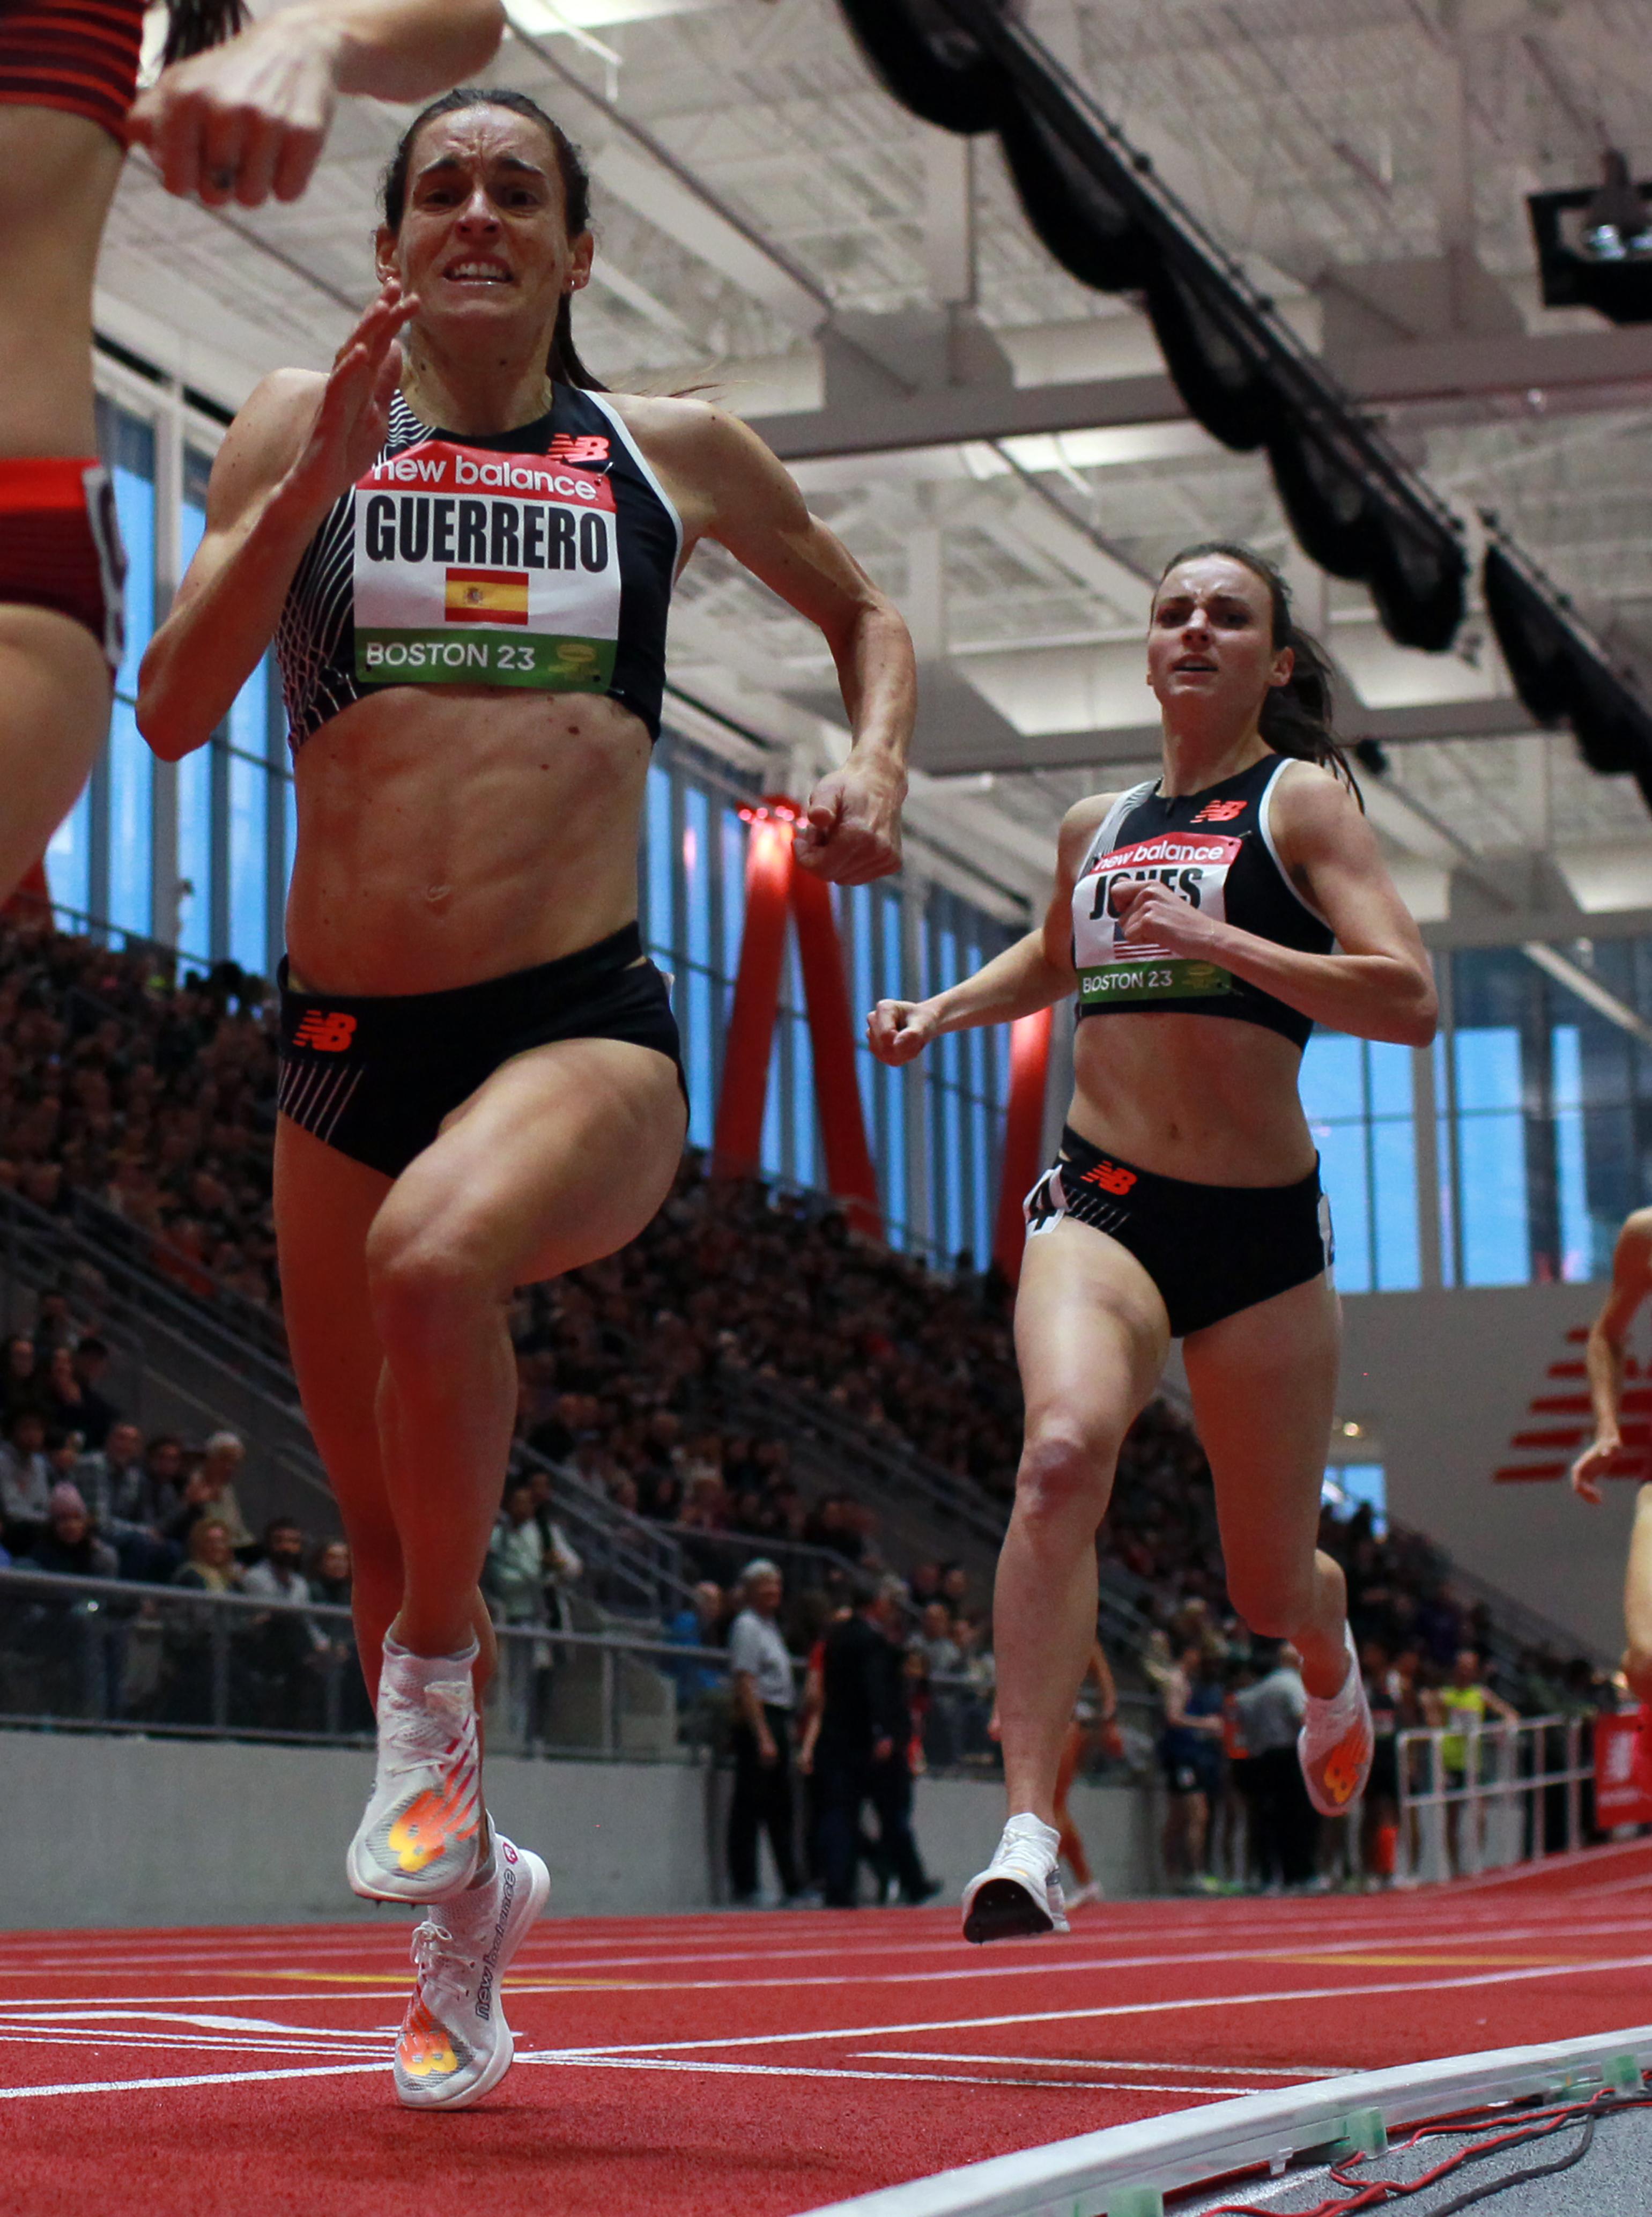 En Boston, Esther Guerrero récord de España de milla y Mariano García triunfa en 800m